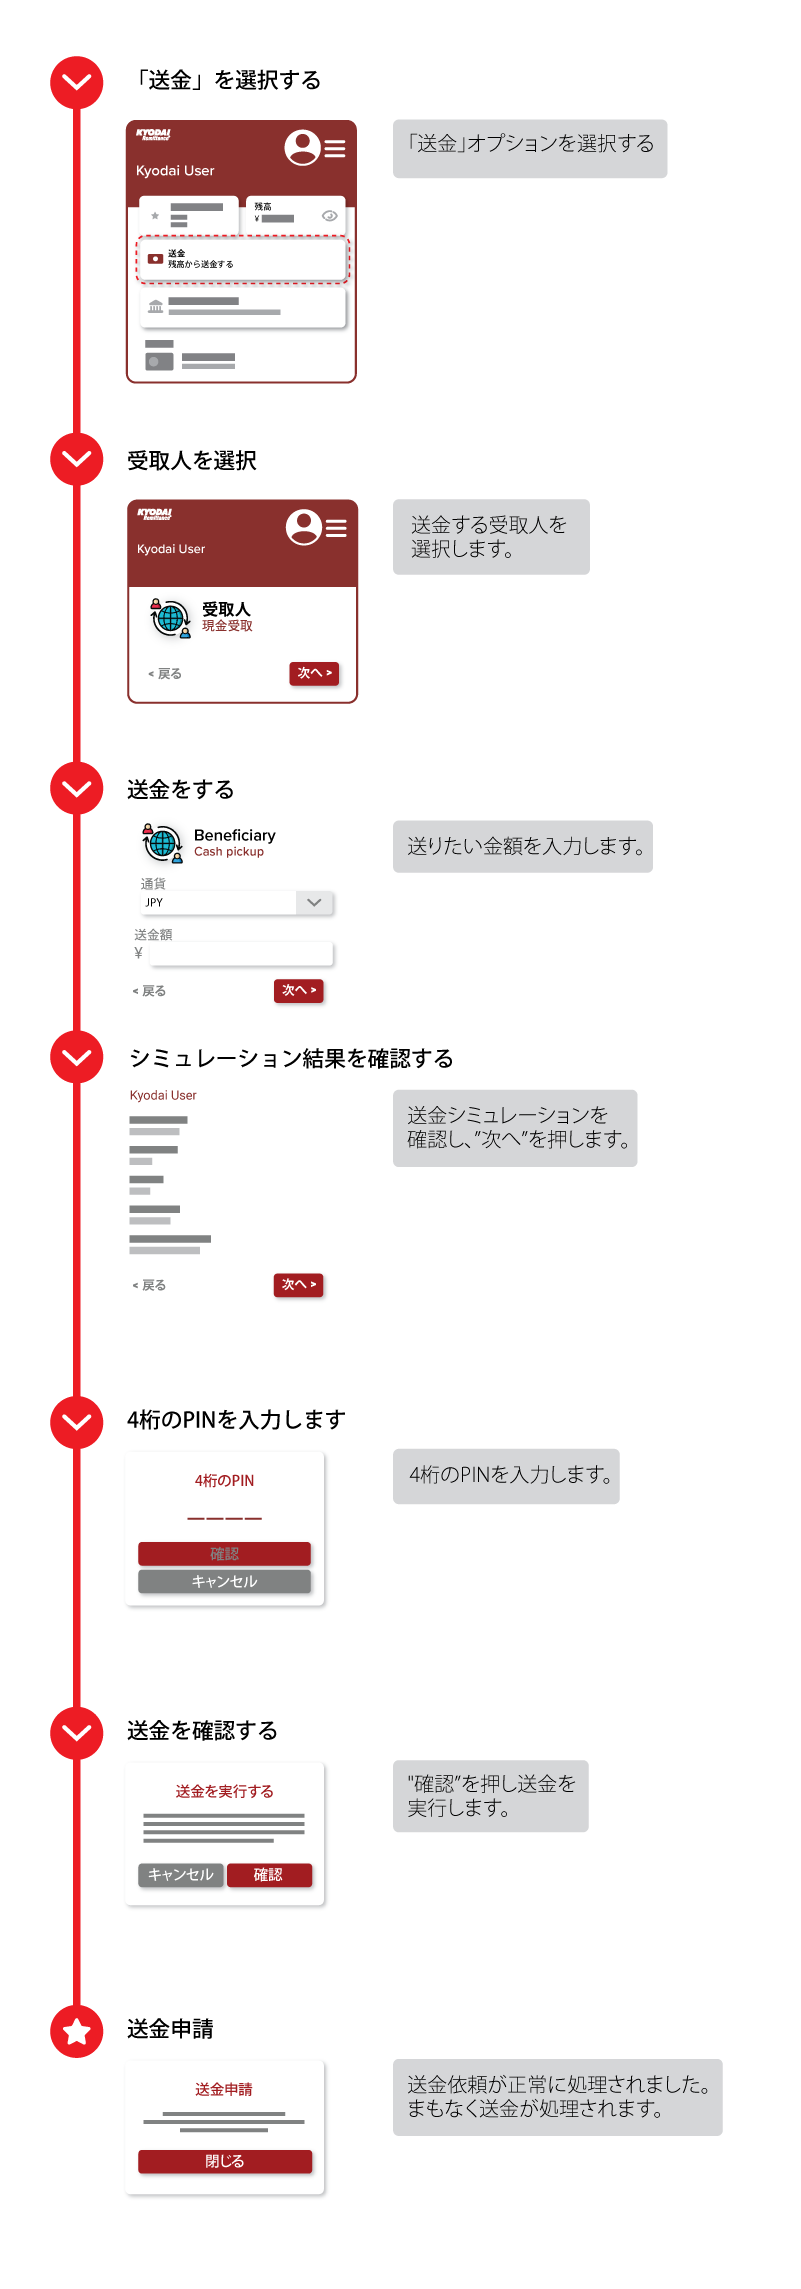 KyodaiApp で送金する方法について